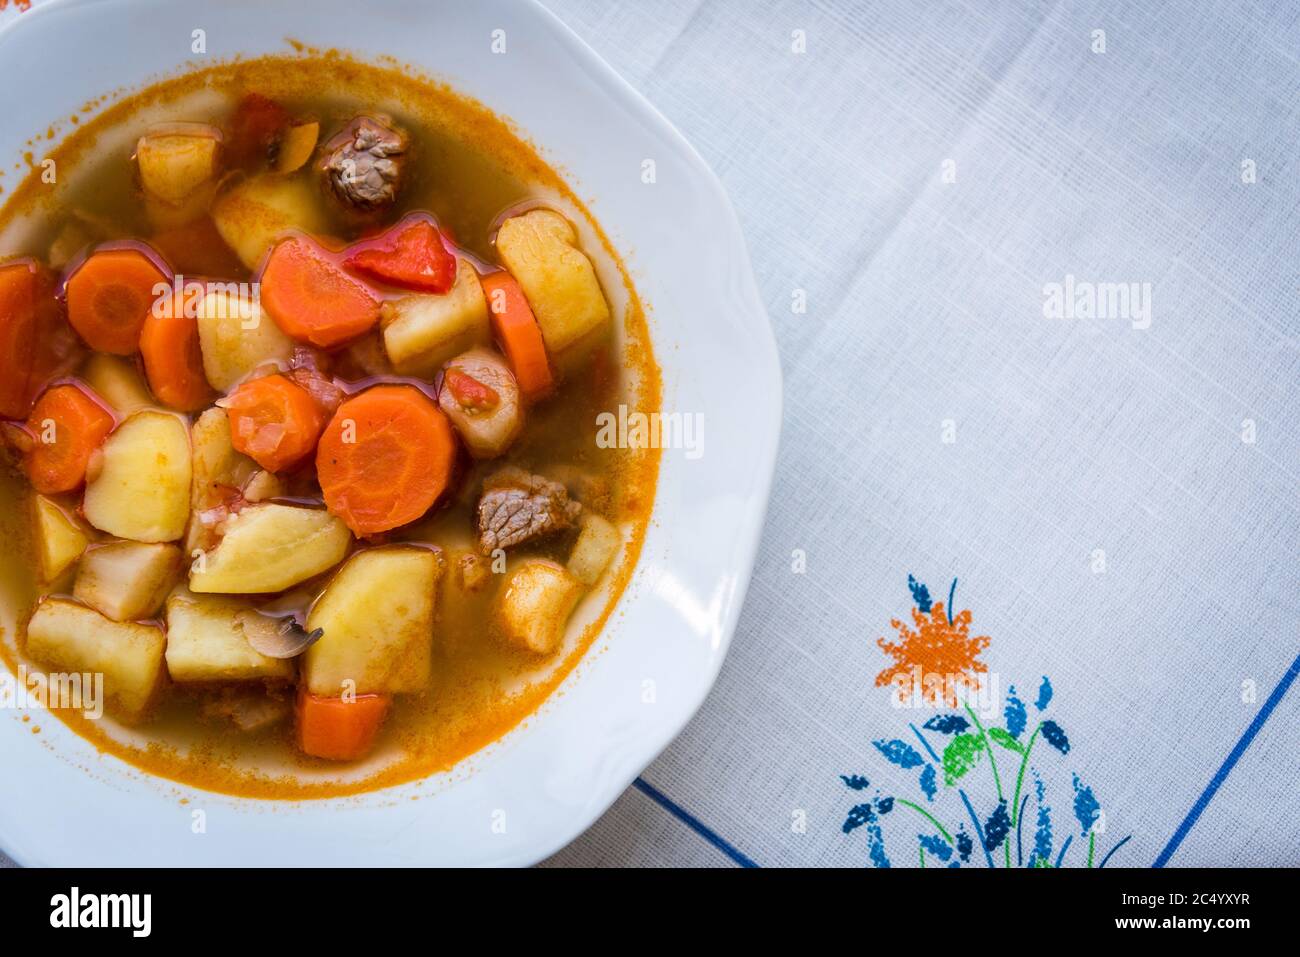 Traditionelle hausgemachte ungarische heiße Gulaschsuppe mit Mem, Kartoffeln, Karotten und Pilzen auf einem weißen Teller auf dem Tisch. Europäische Küche. Draufsicht. Stockfoto